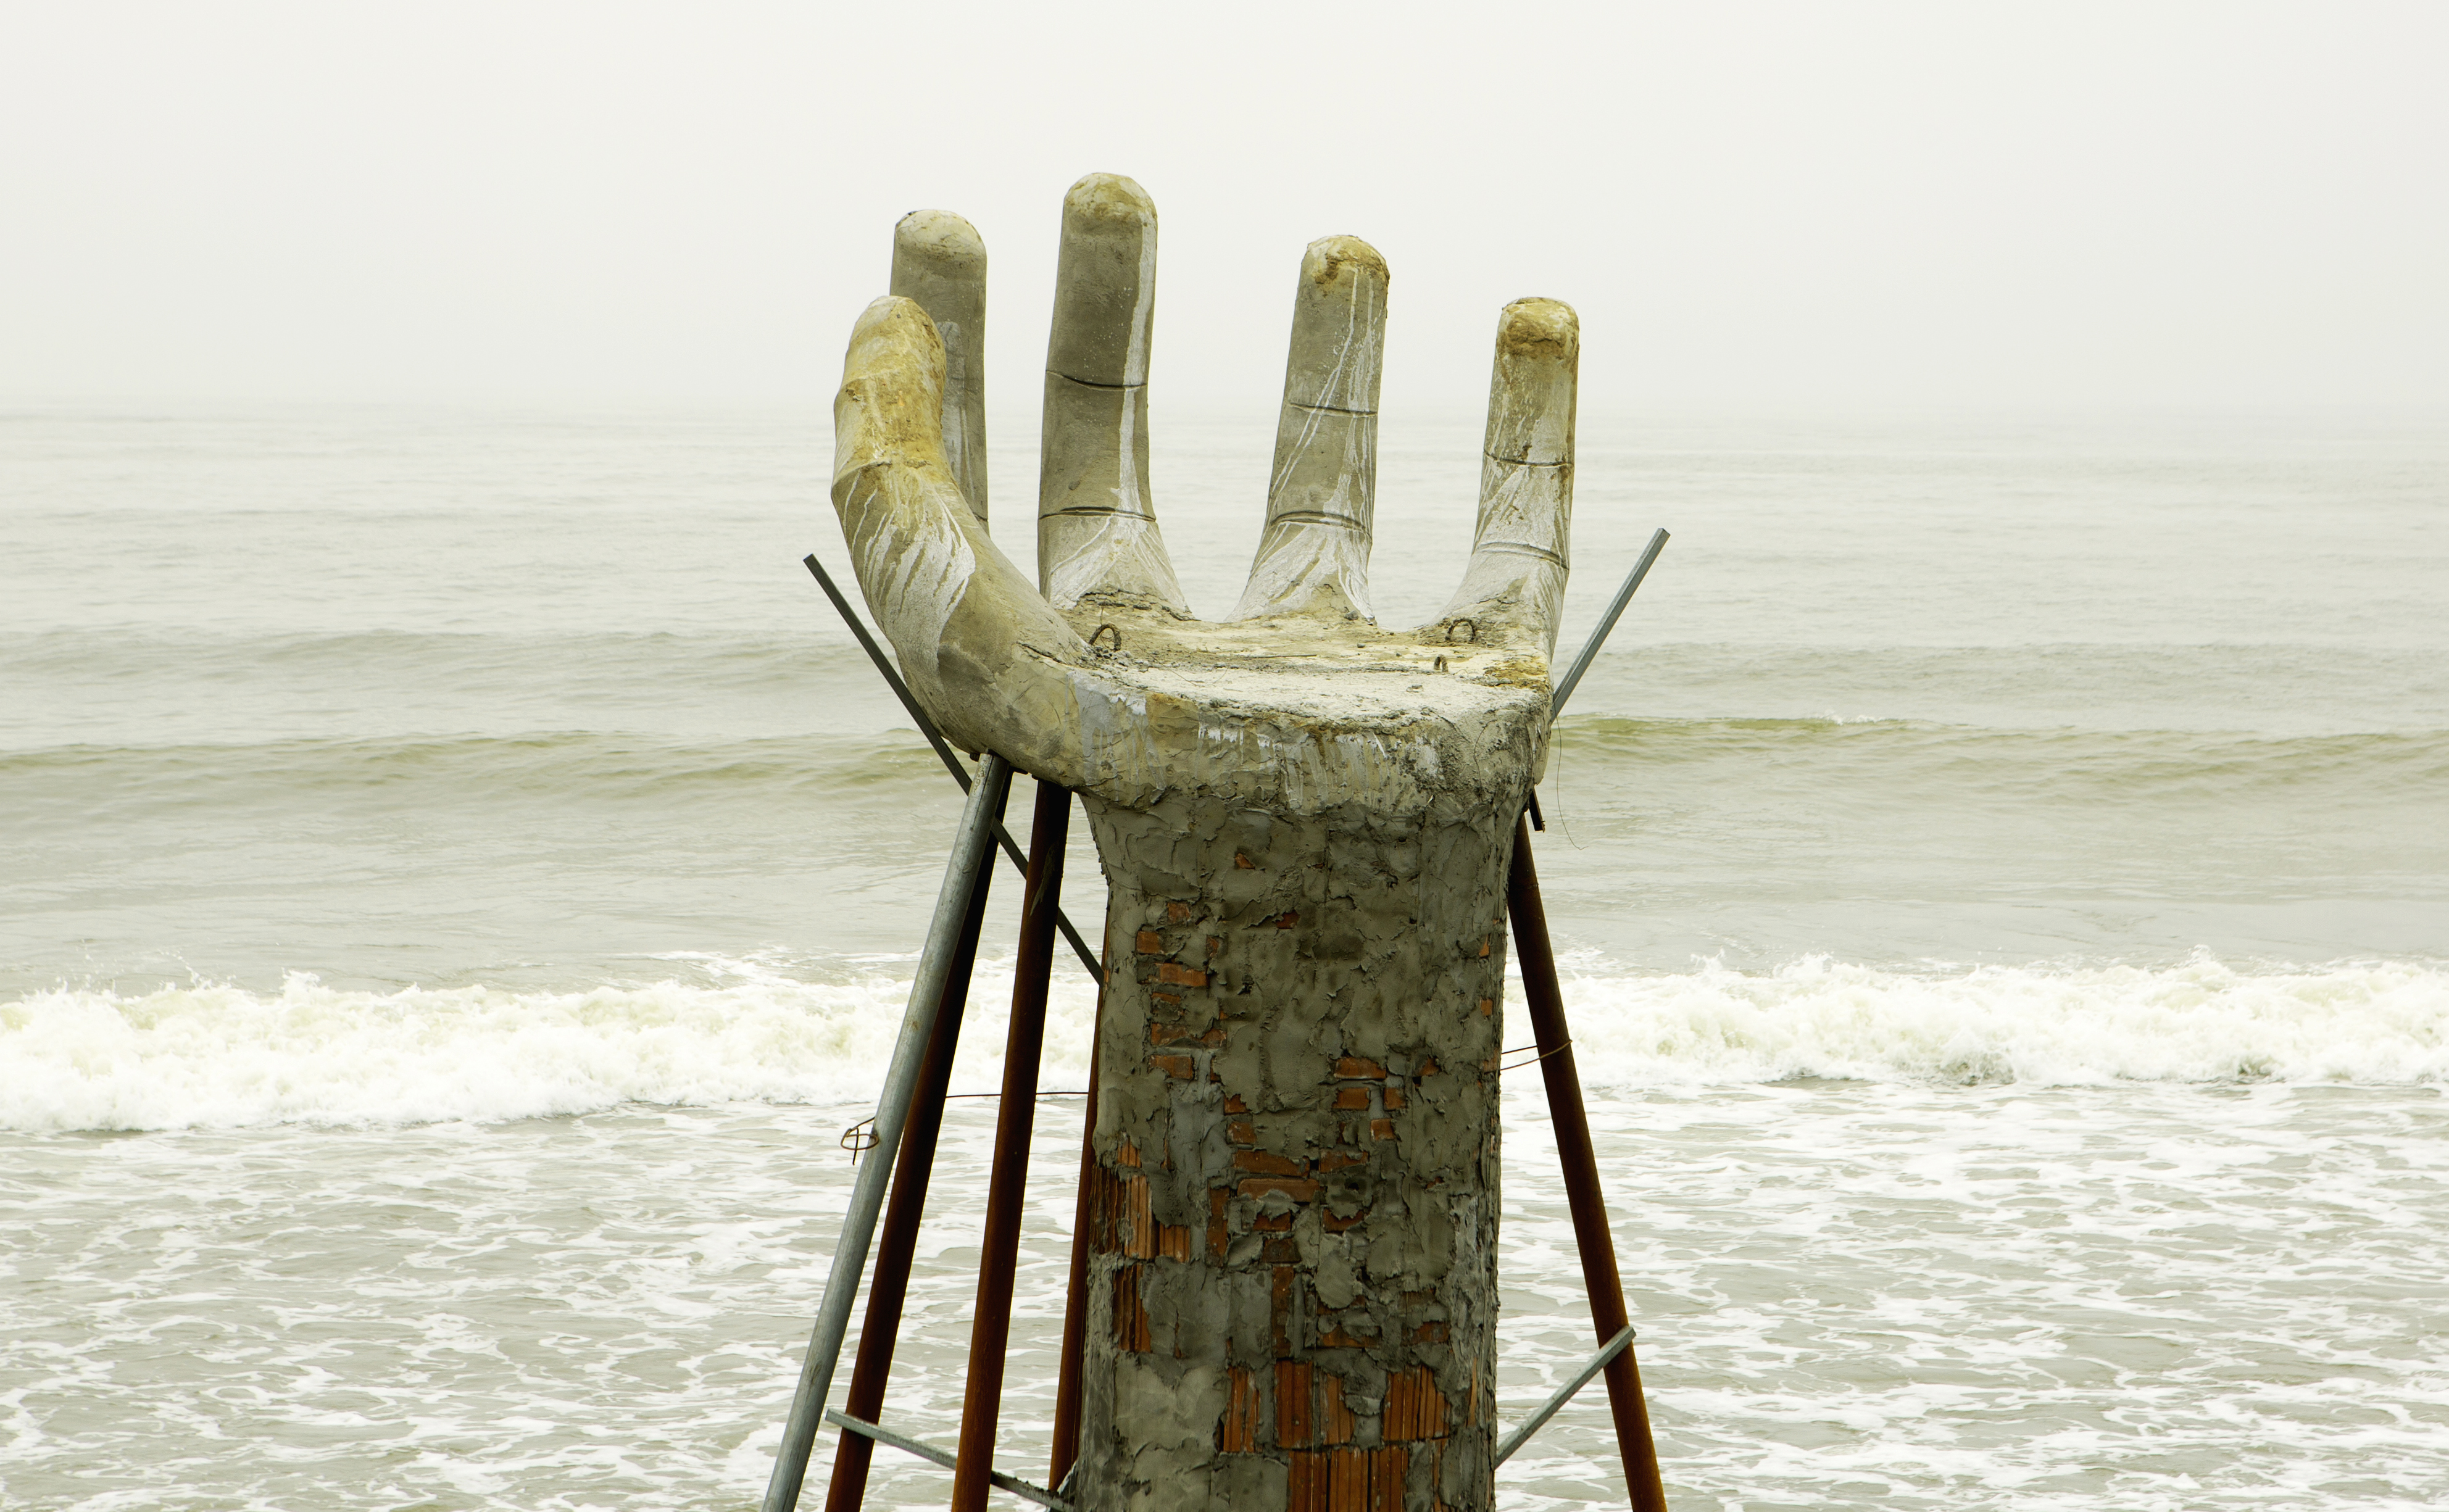 Du khách bất ngờ với 5 bàn tay khổng lồ mọc trên bờ biển ở Thanh Hóa